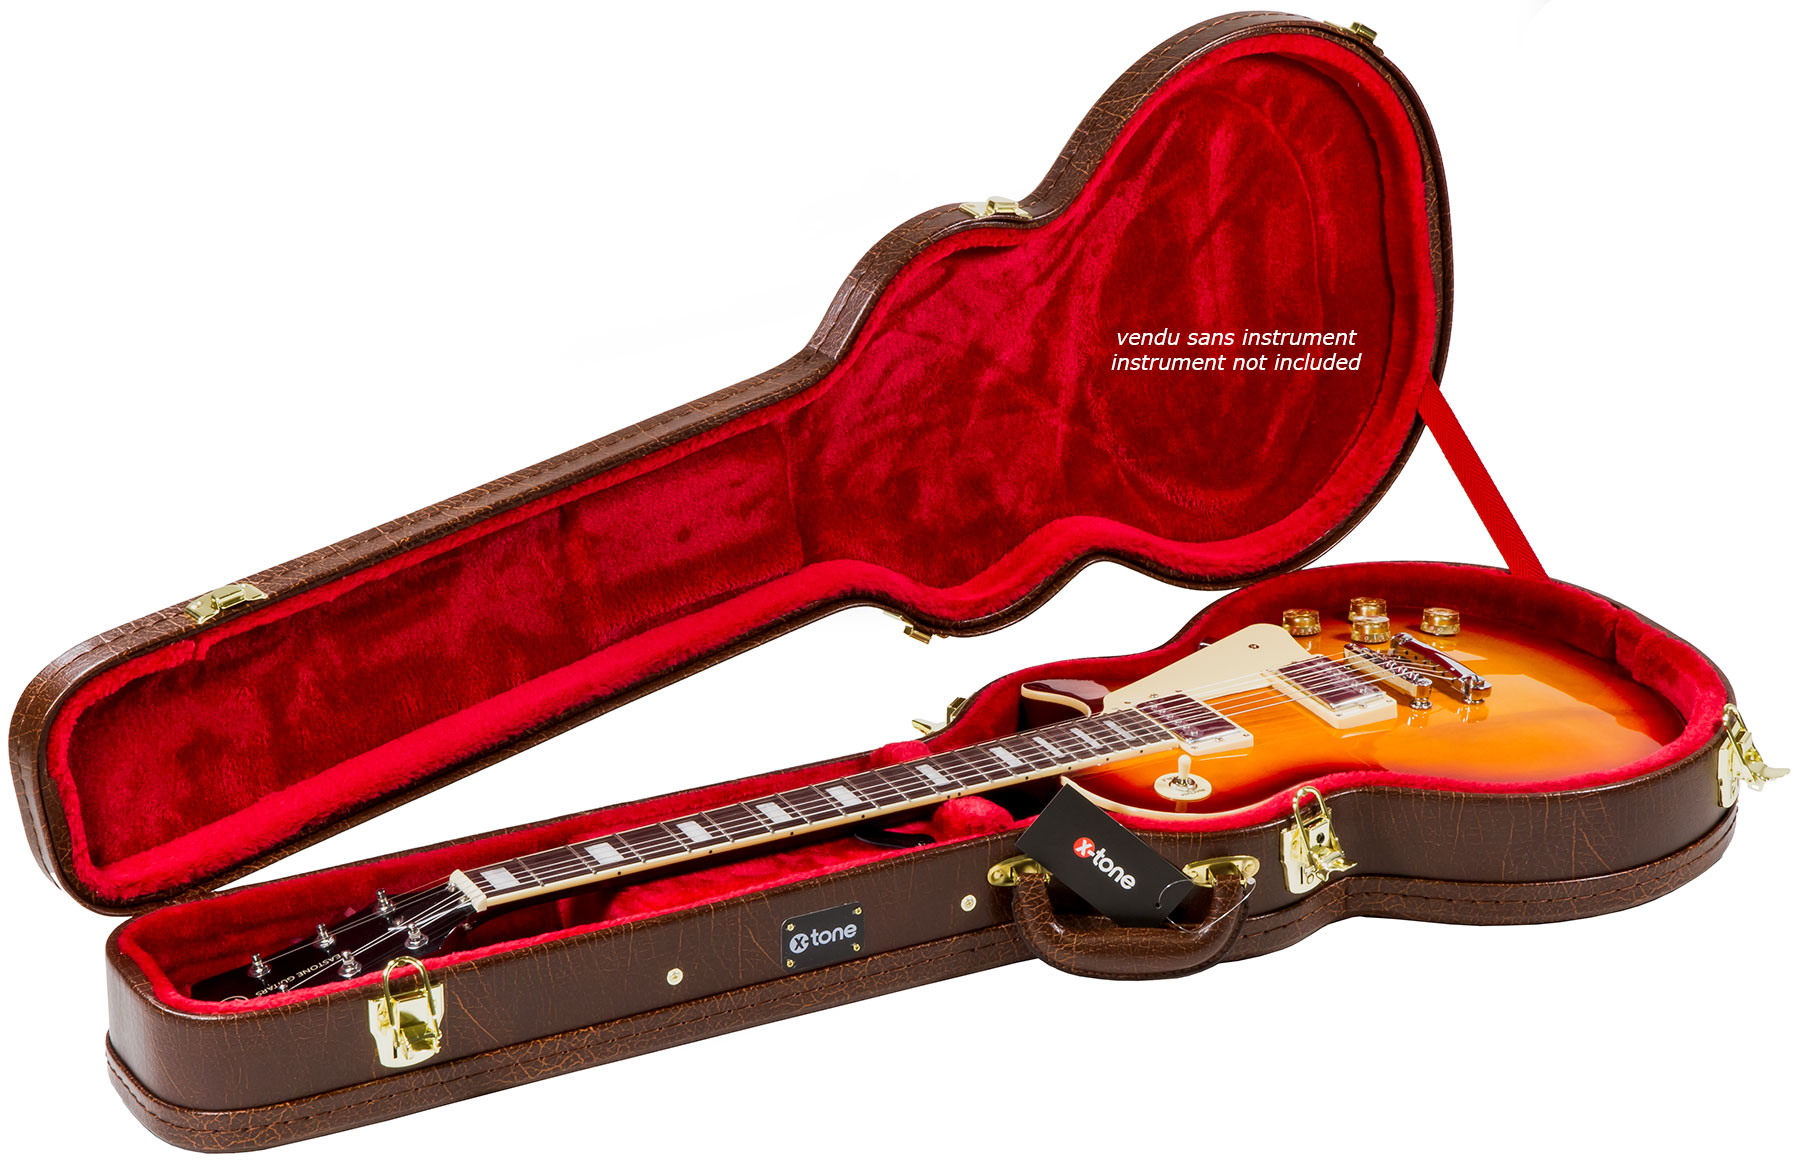 X-tone 1552 Deluxe Electrique Les Paul En Forme Brown - Electric guitar case - Variation 1